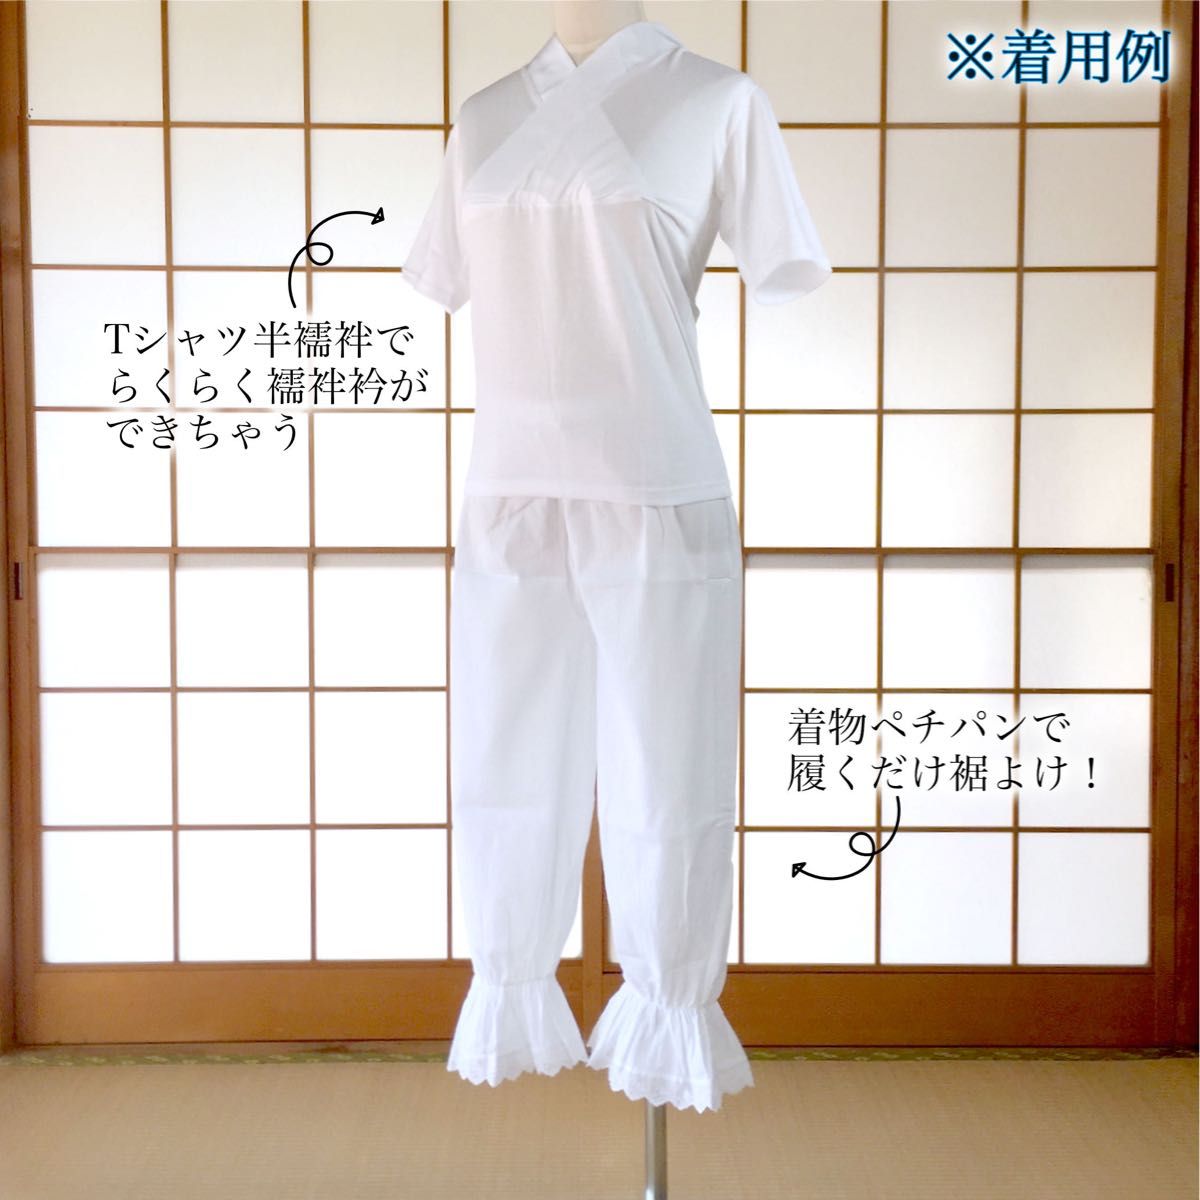 【新品】着物ペチパンツ パンツ型 裾よけ Mサイズ 着物インナー 日本製 kimonolove